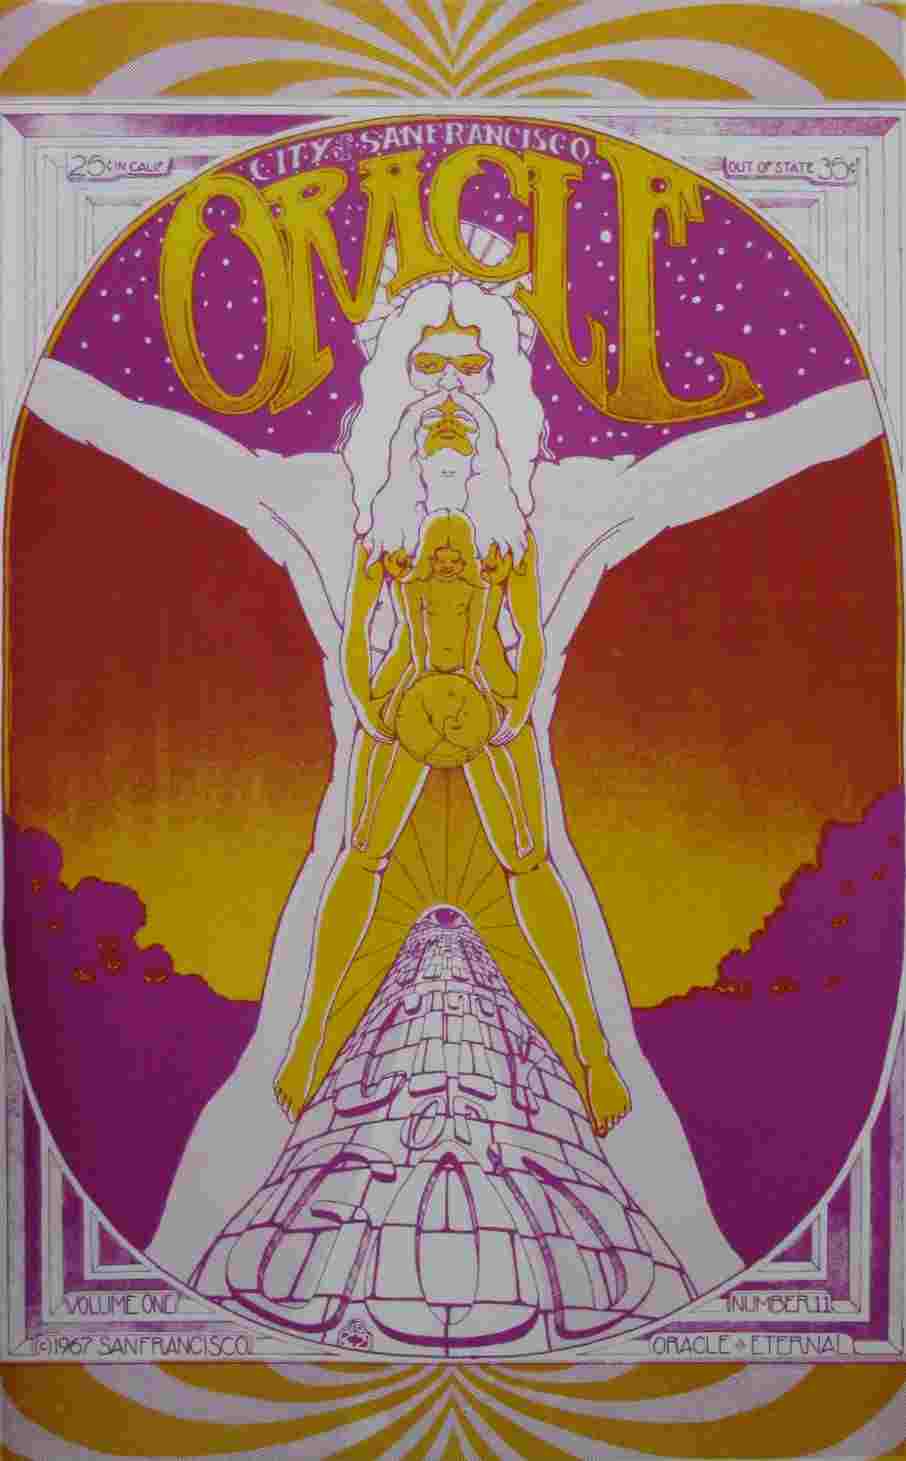 San Francisco Oracle cover, 1967 vol 1 no 11